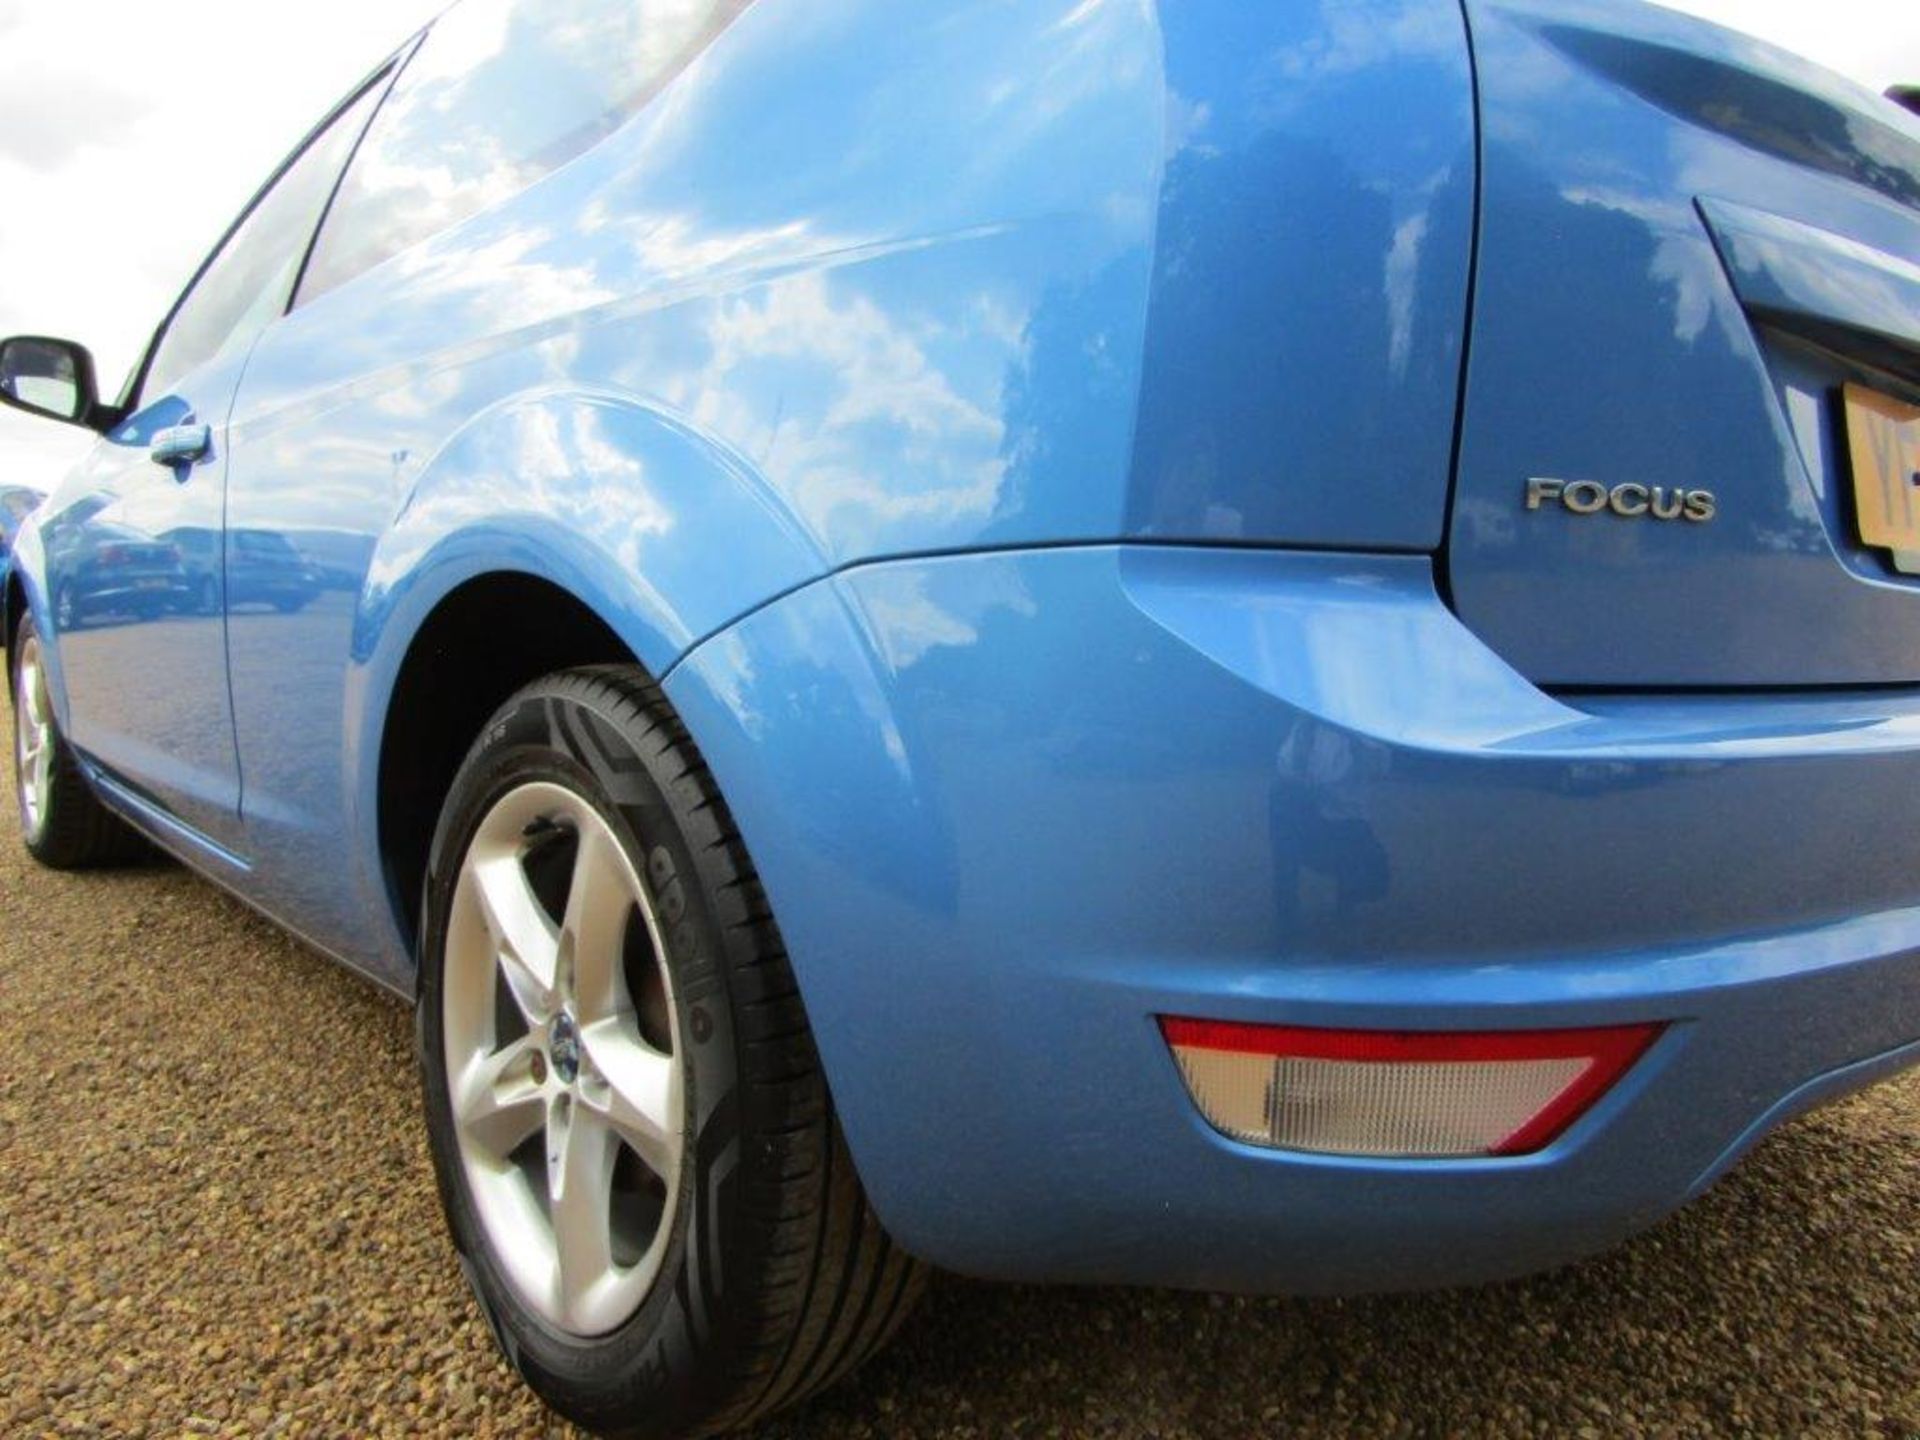 09 09 Ford Focus Zetec 100 - Image 3 of 18